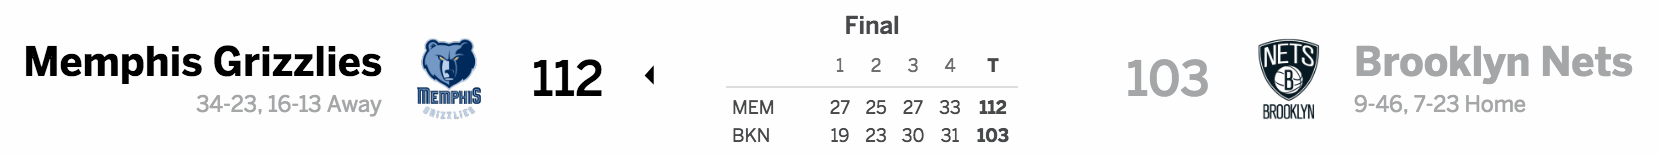 Brooklyn Nets vs. Memphis Grizzlies 02-13-17 Score